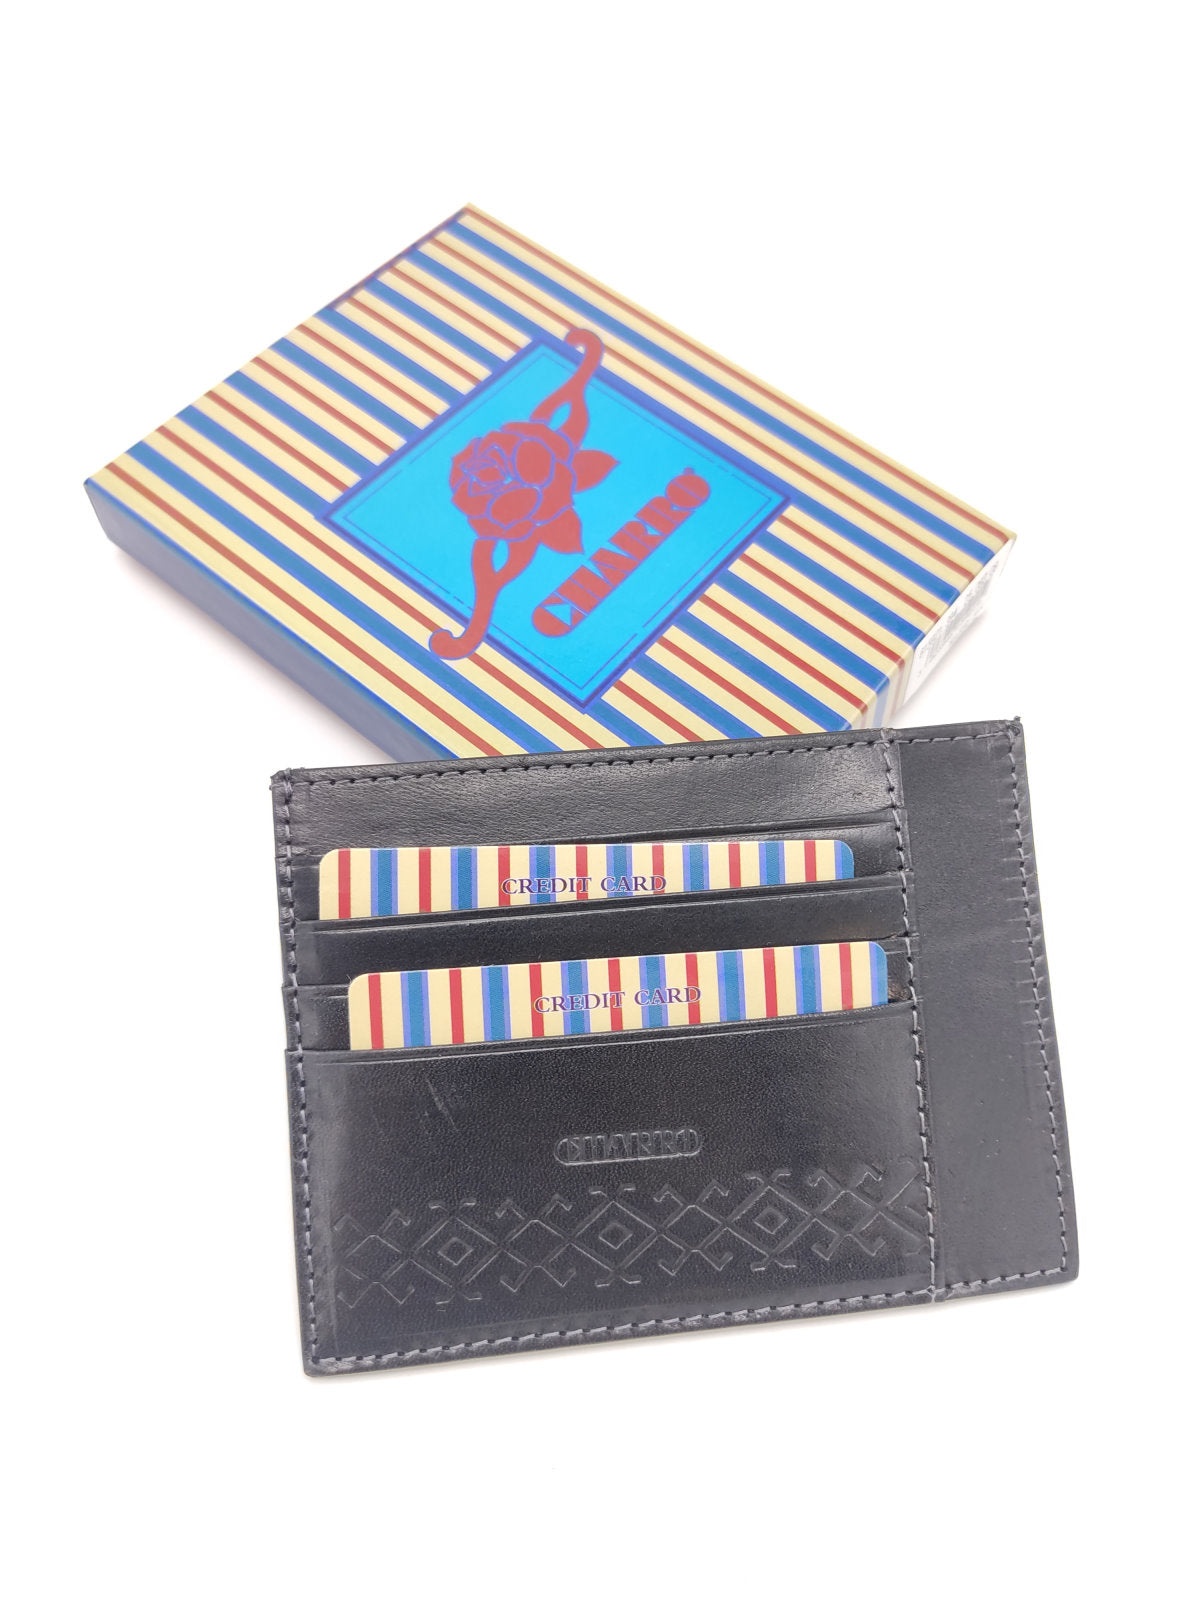 Genuine leather card holder for men, brand Charro, art. 614921.335